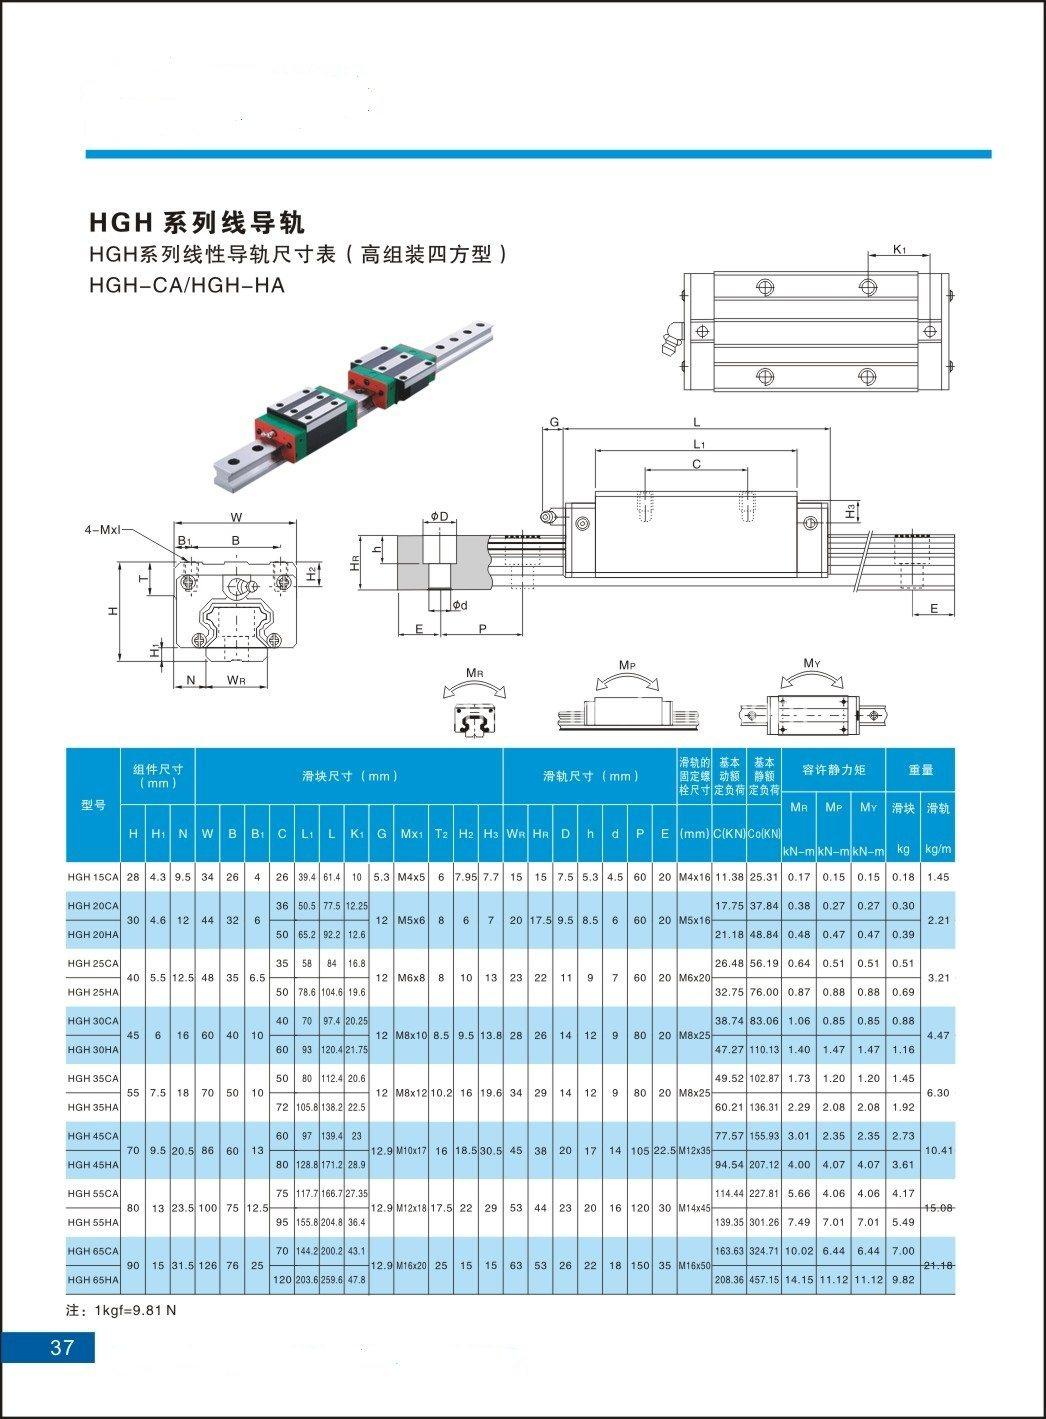 CNC Linear Motion Guide Block Hgw15ca Hgw20ca Hgw25ca Hgw30ca